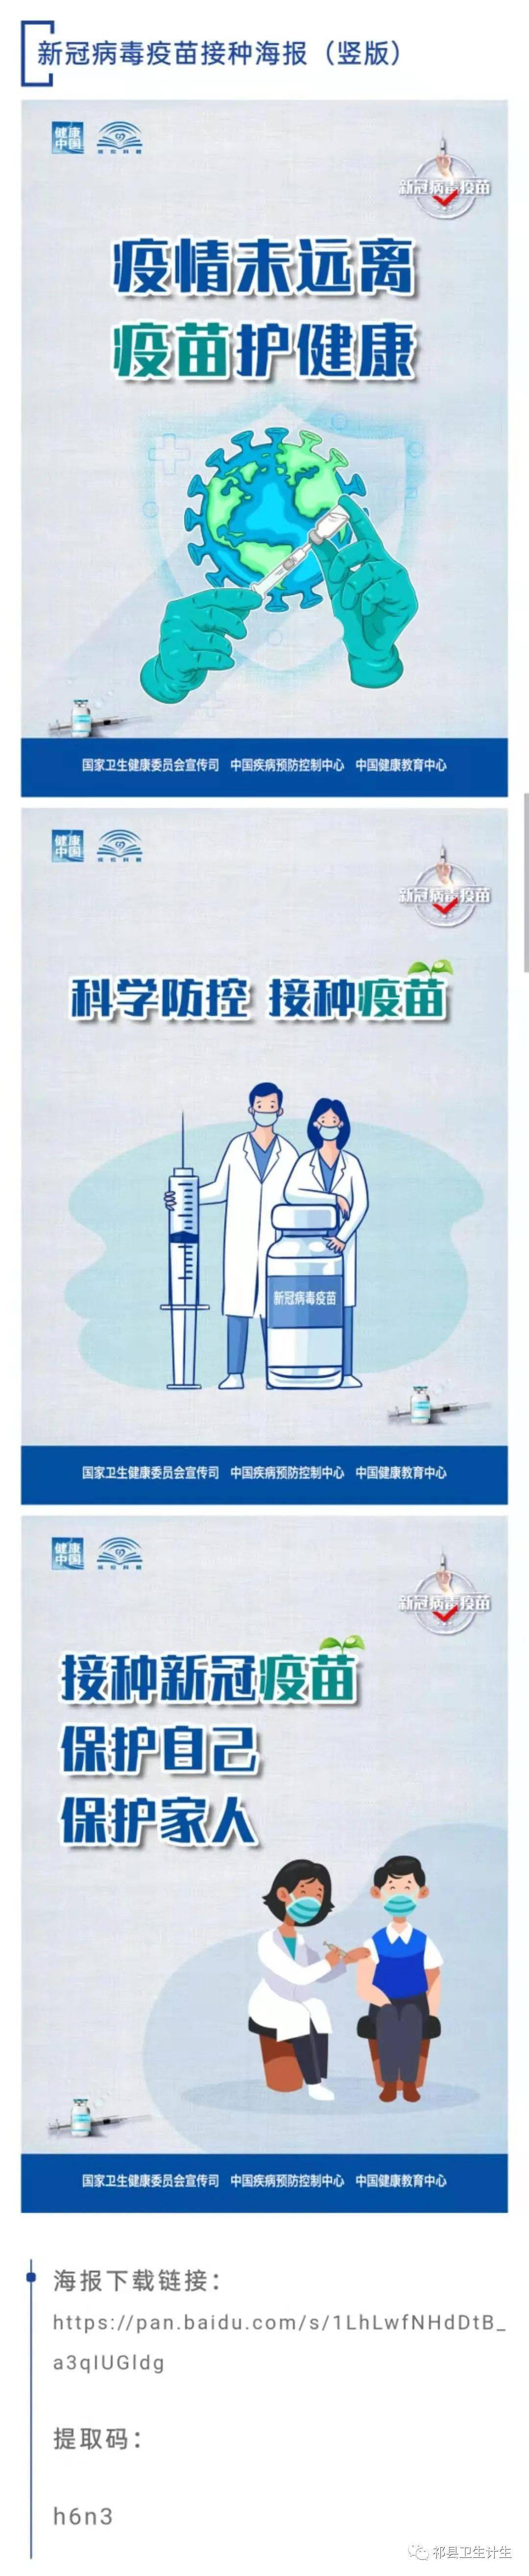 新冠病毒疫苗接种海报来了